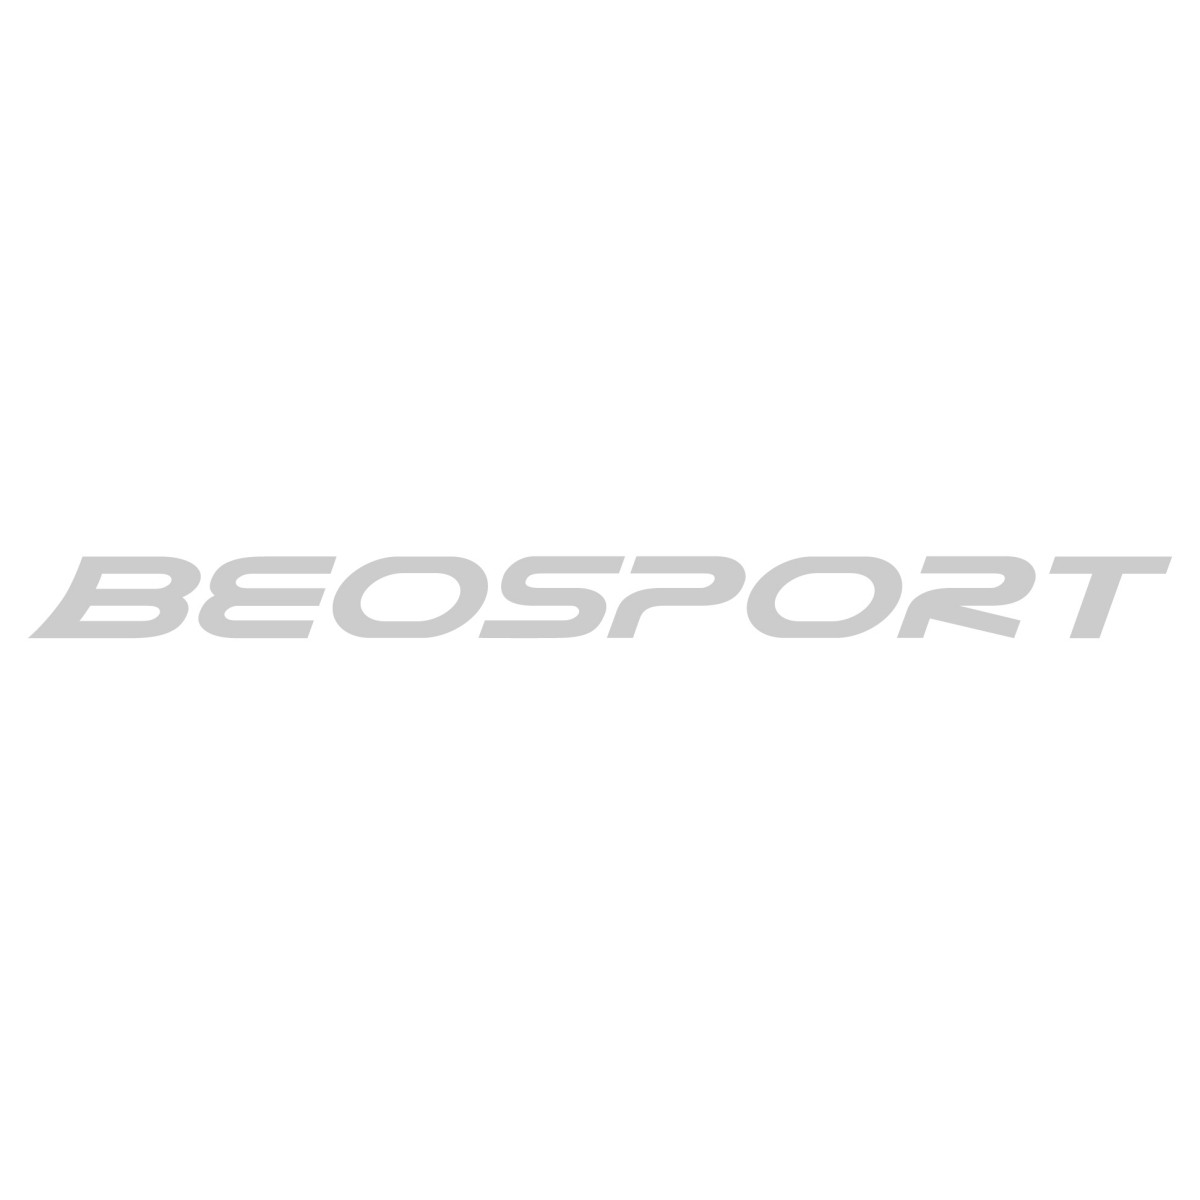 Outdoor cipele - Beosport.com